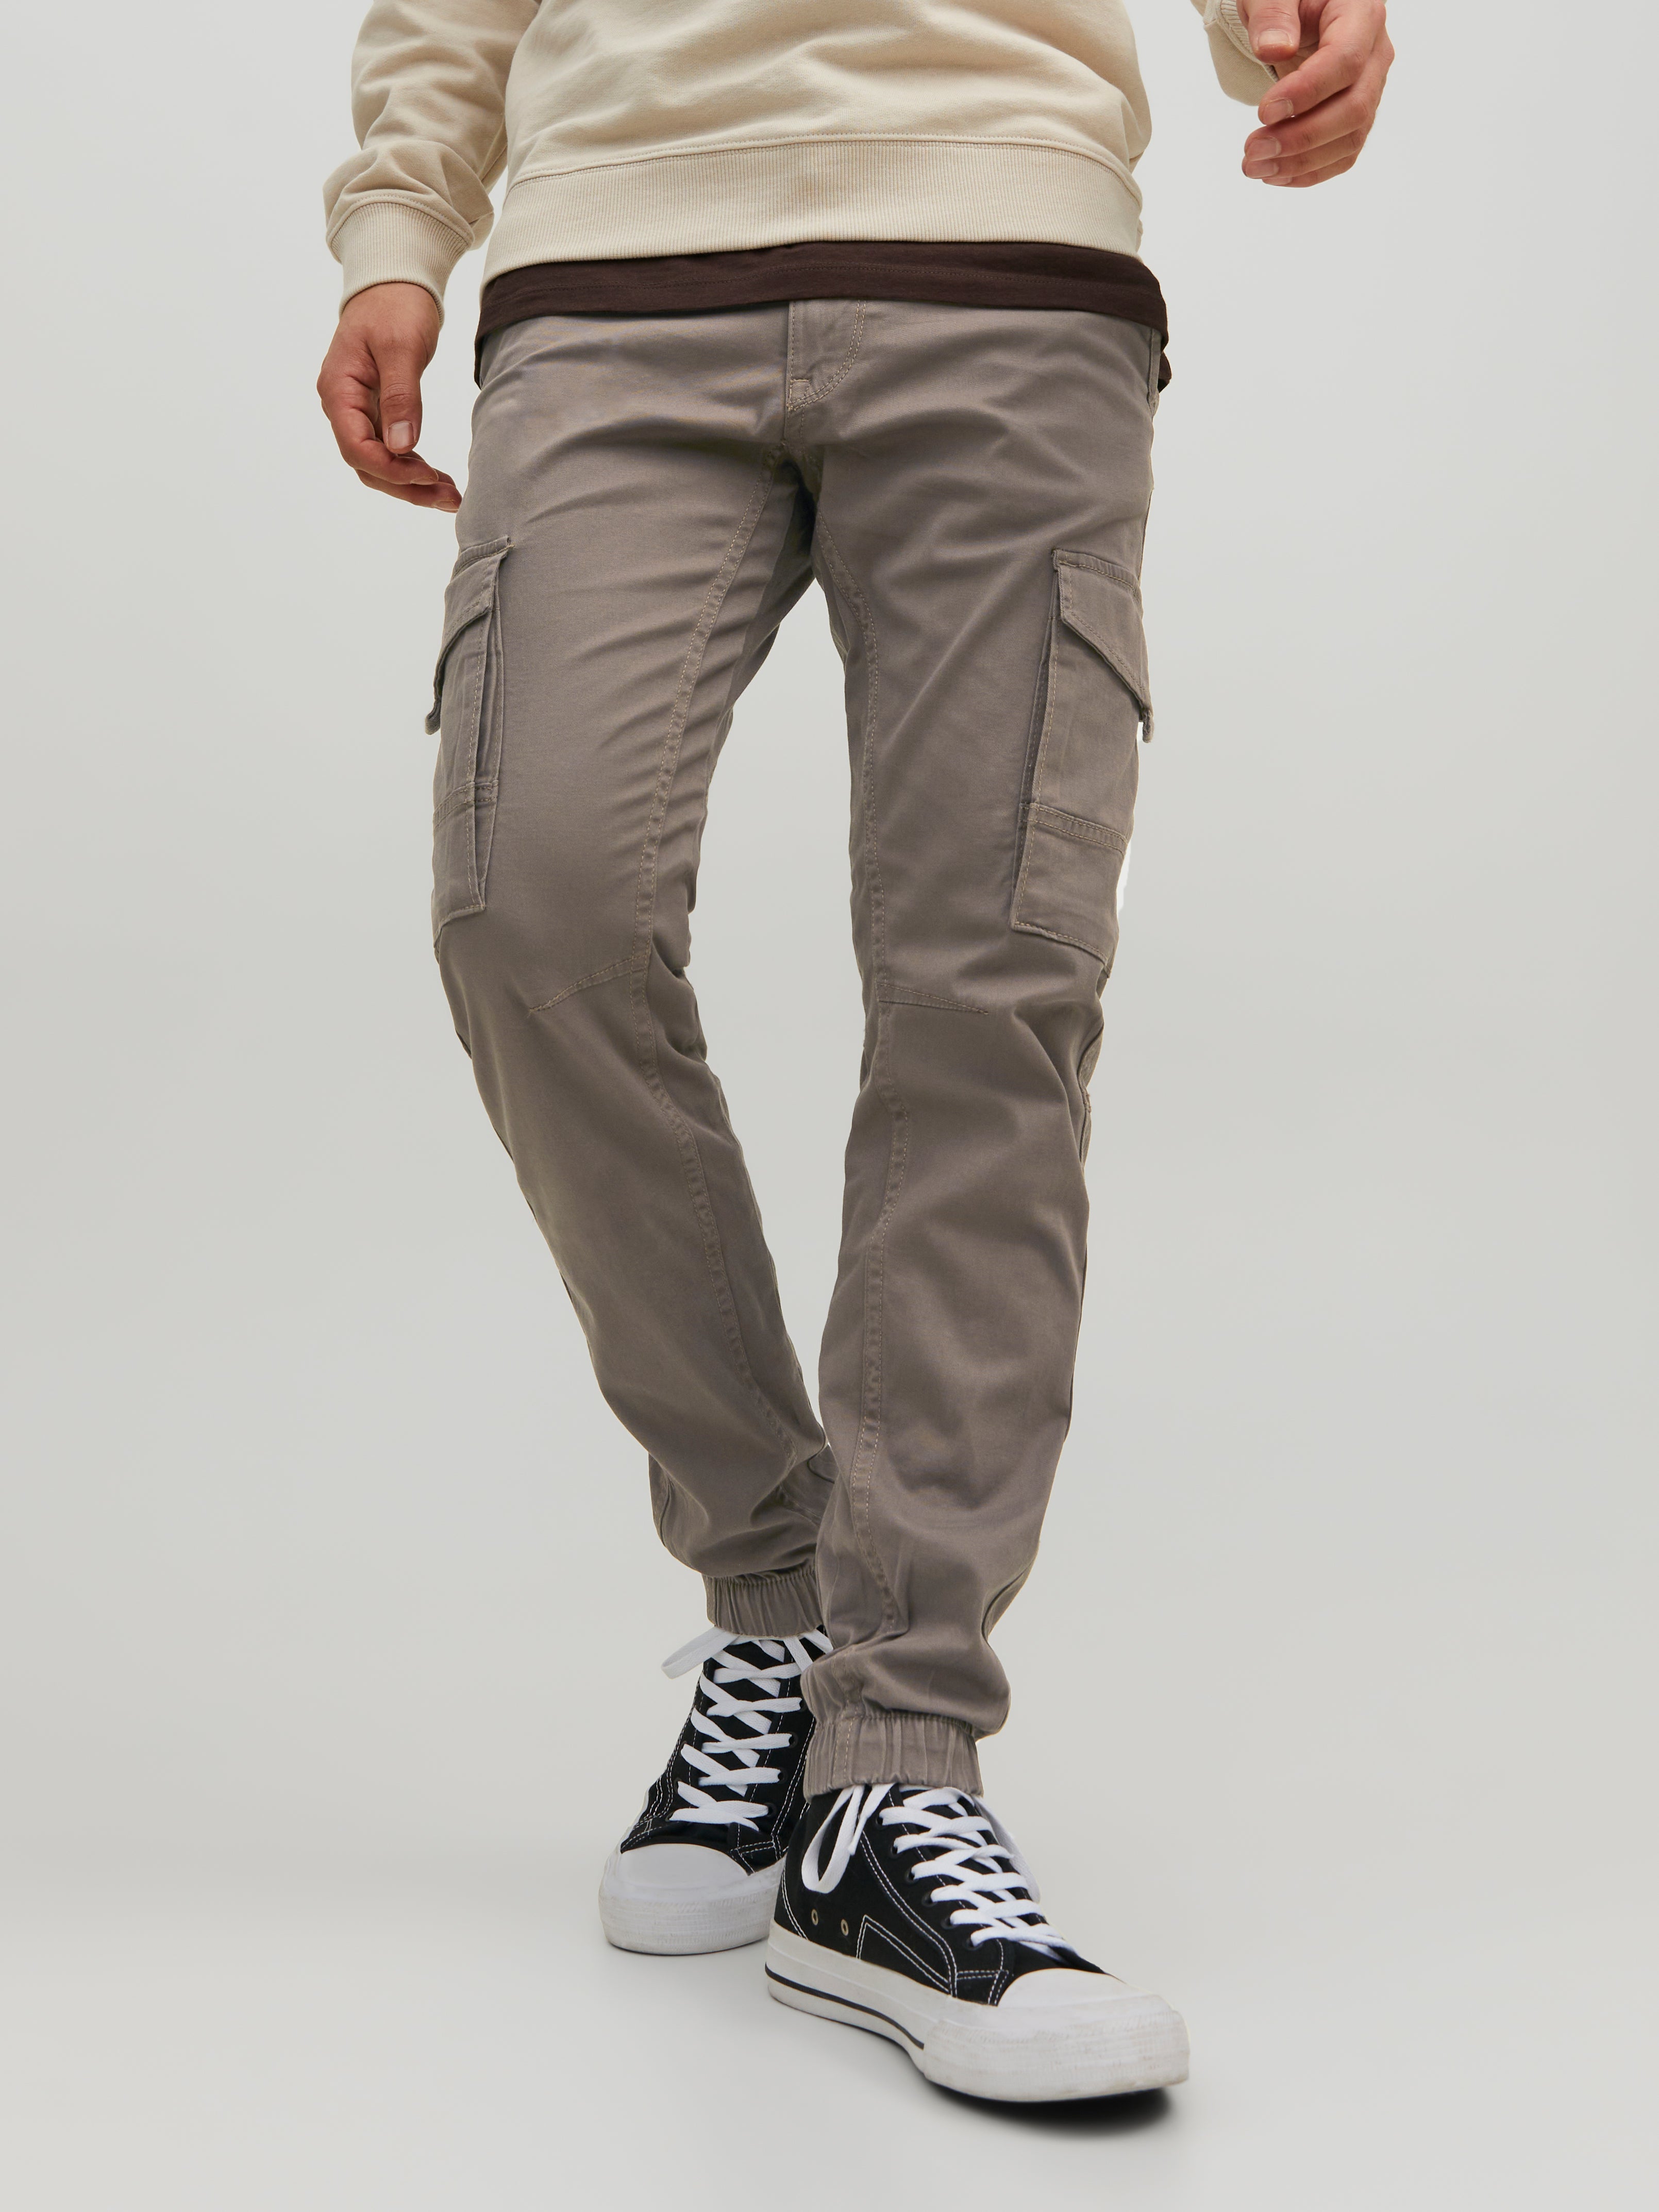 Men's Jack Jones Paul Warner Slim Fit Cargo Pants in Green - Walmart.com